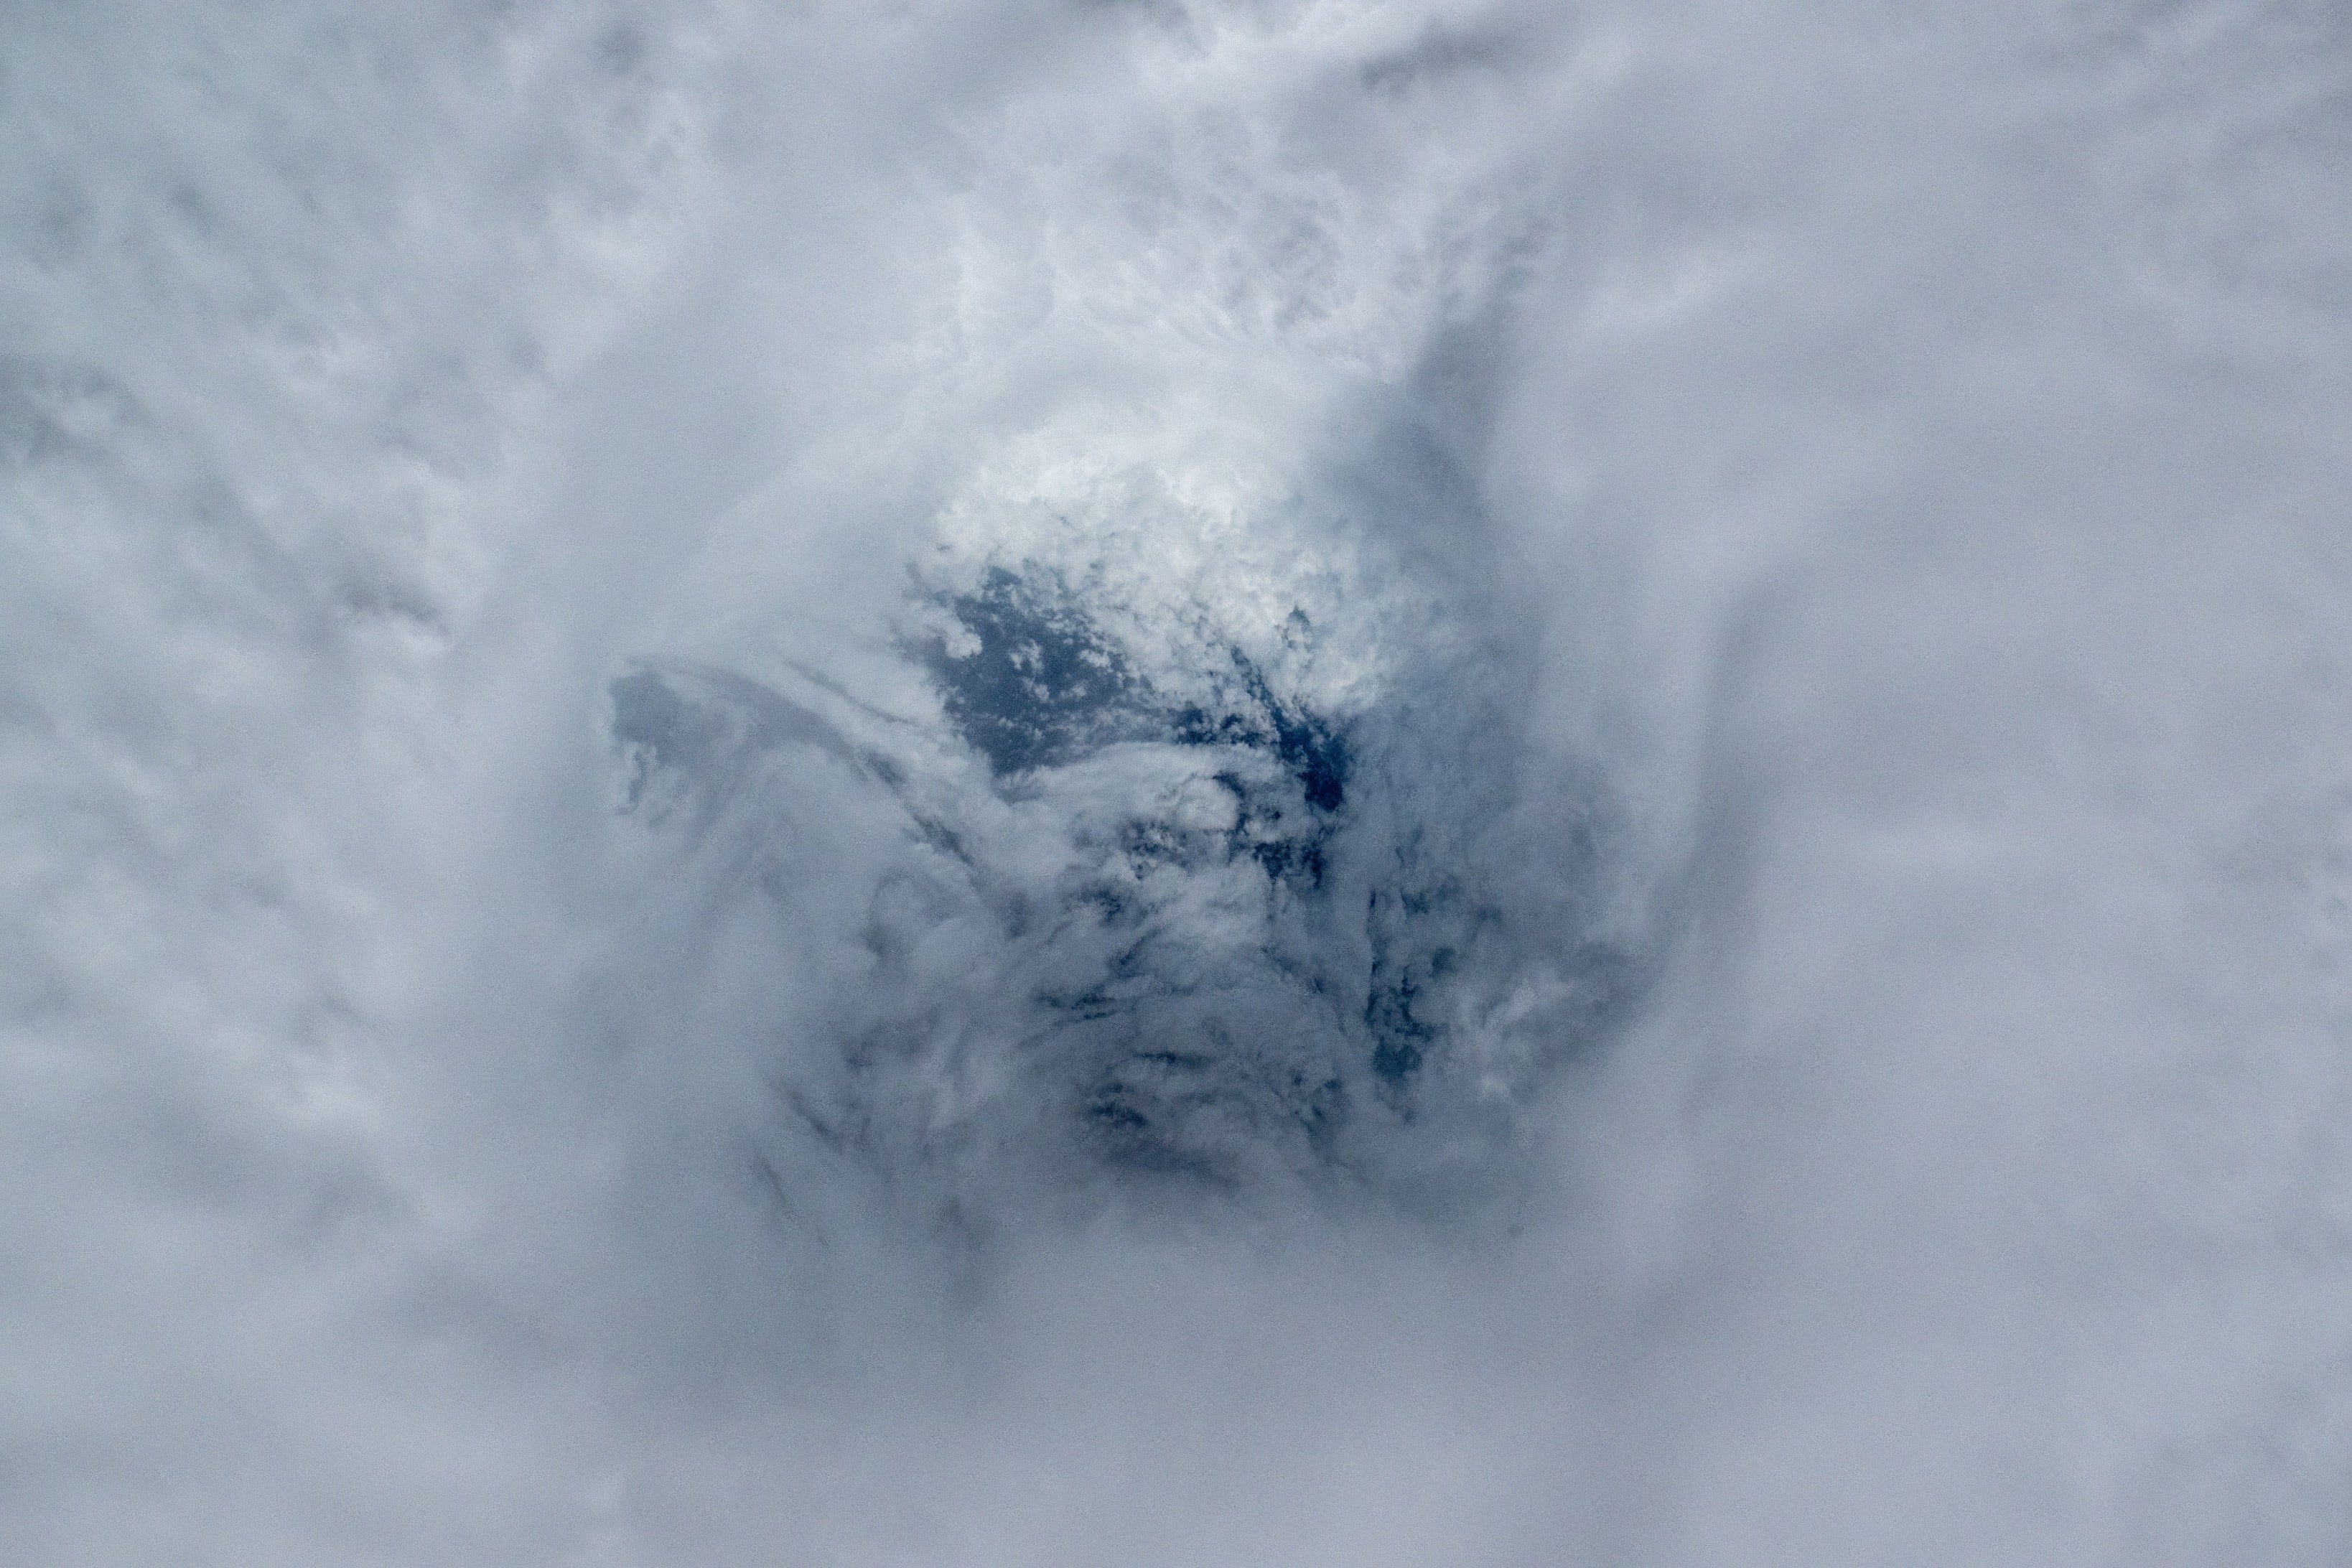 Vista aérea del huracán Beryl tomada por Matthew Dominick mientras la tormenta se intensificaba.